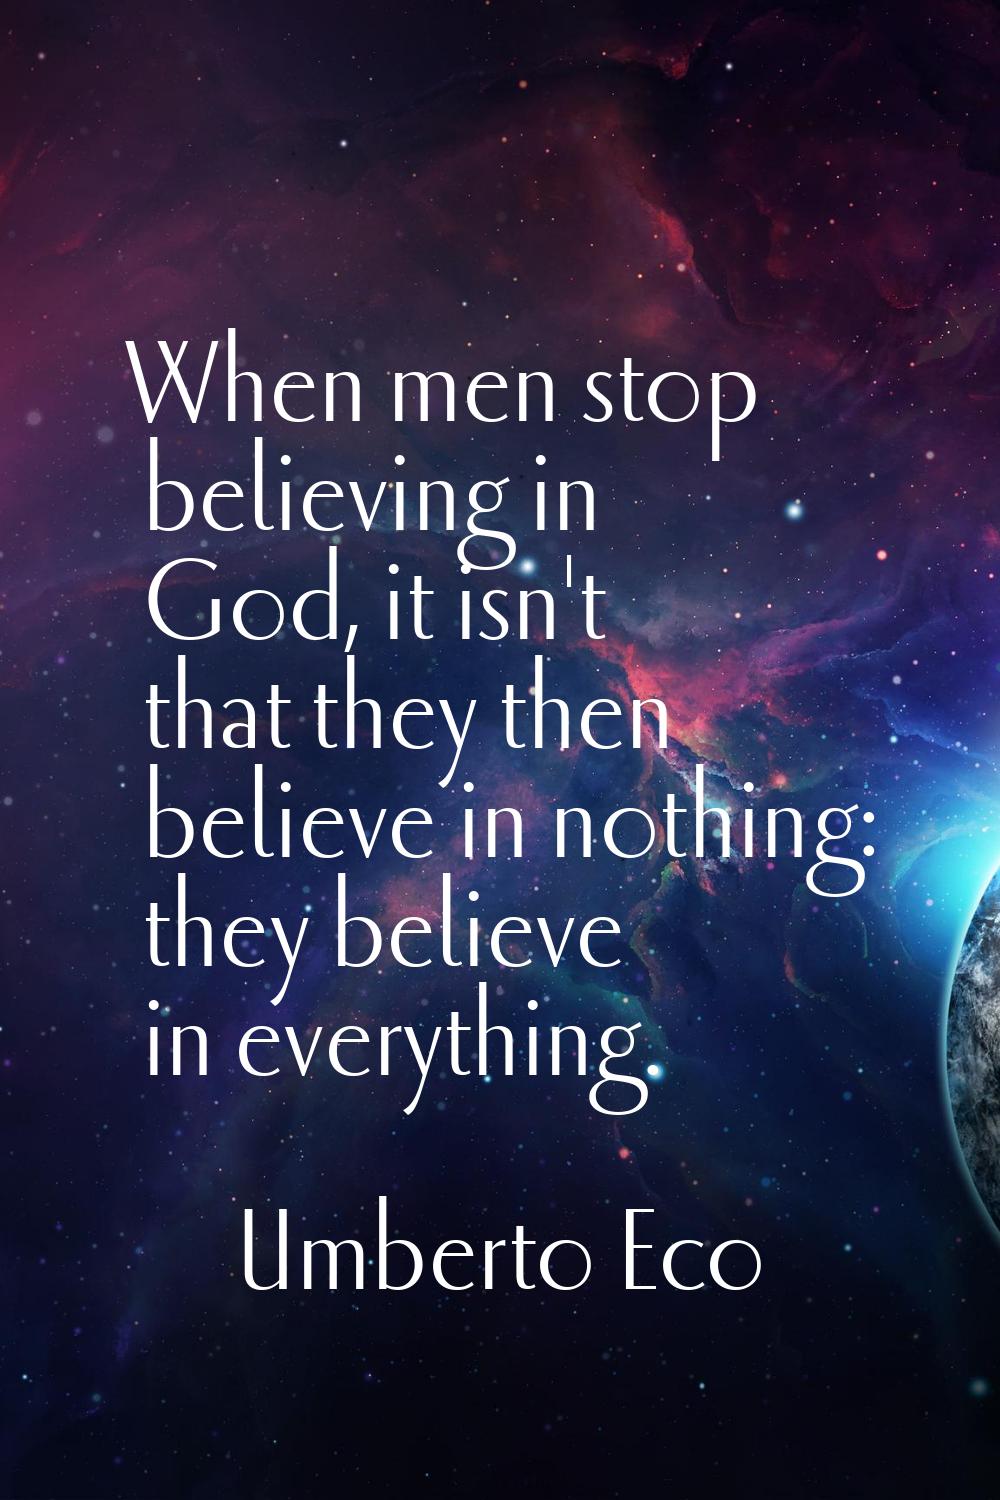 When men stop believing in God, it isn't that they then believe in nothing: they believe in everyth